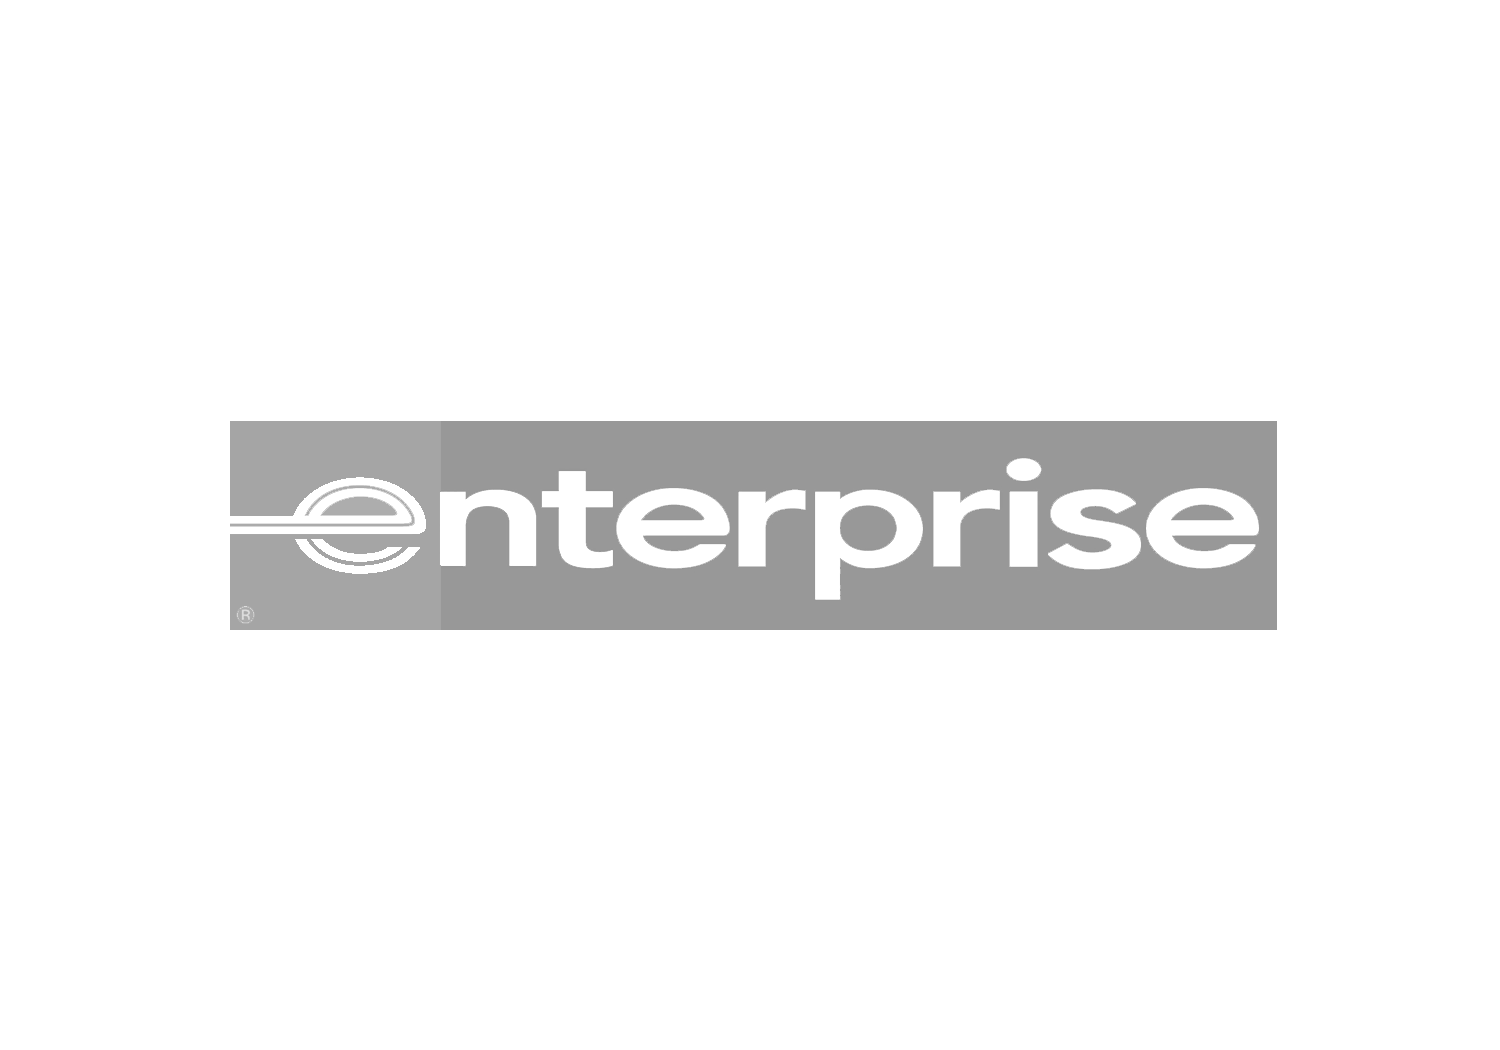 enterprise.png